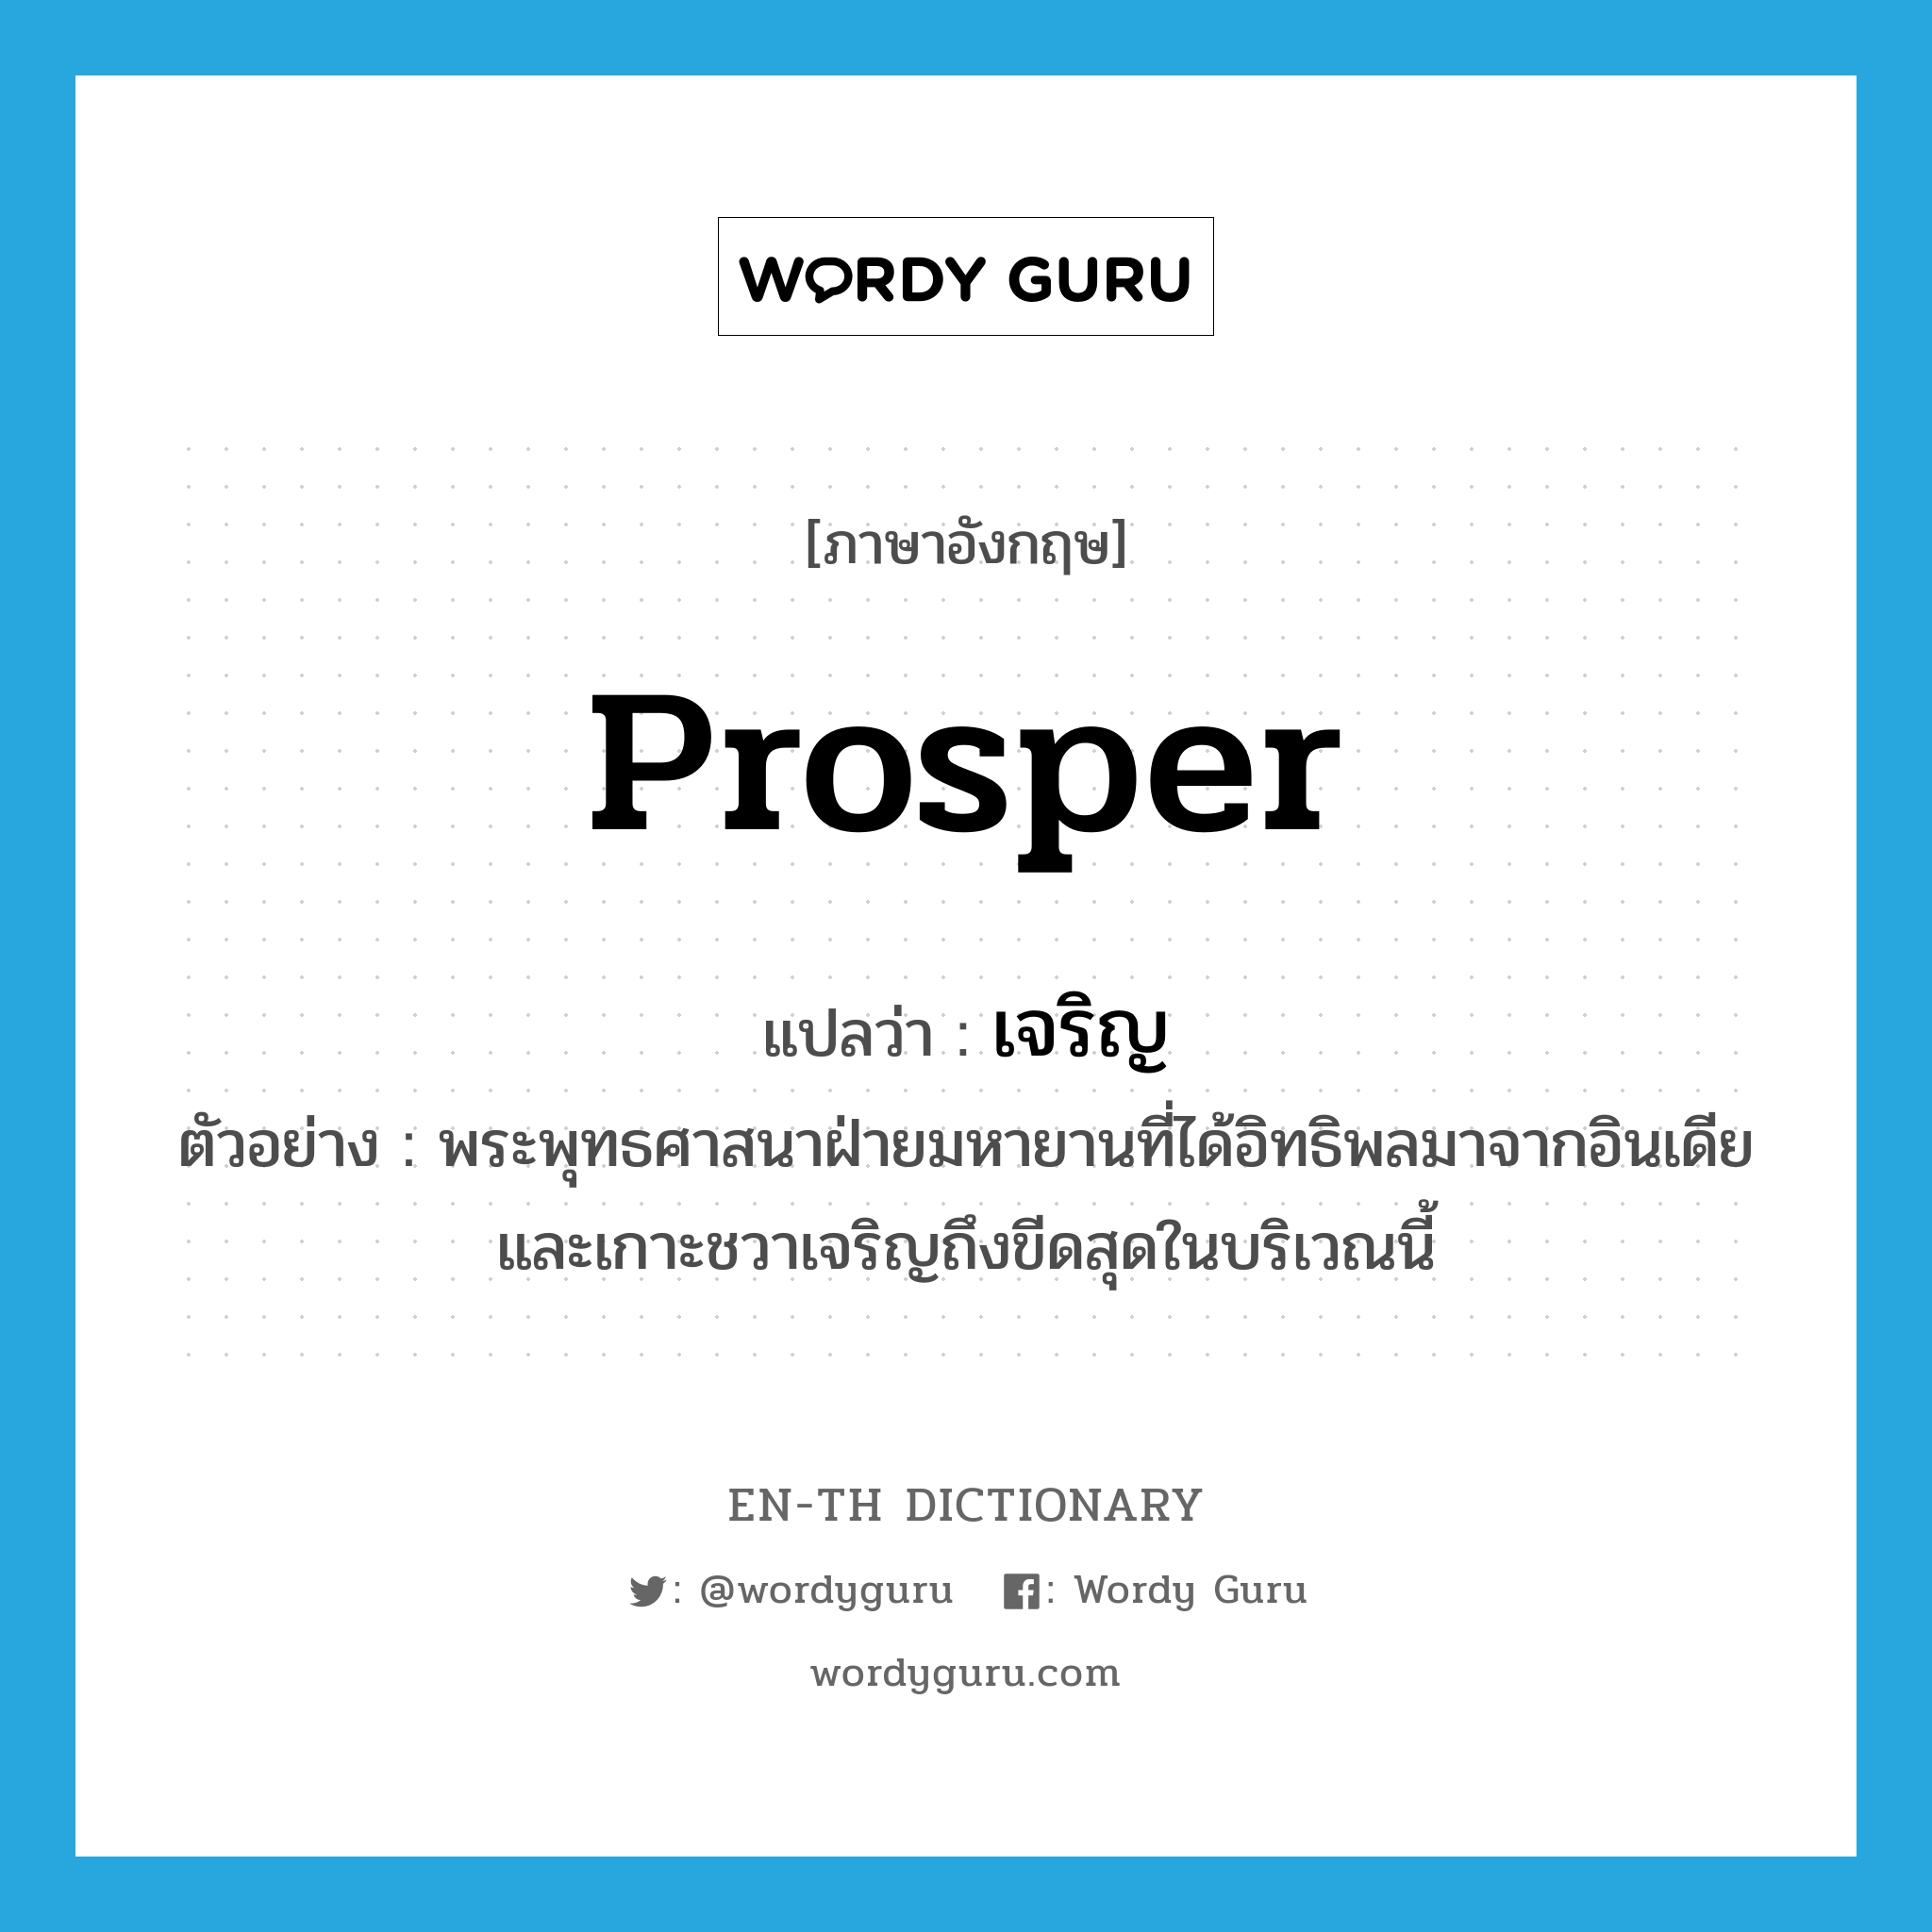 prosper แปลว่า?, คำศัพท์ภาษาอังกฤษ prosper แปลว่า เจริญ ประเภท V ตัวอย่าง พระพุทธศาสนาฝ่ายมหายานที่ได้อิทธิพลมาจากอินเดียและเกาะชวาเจริญถึงขีดสุดในบริเวณนี้ หมวด V